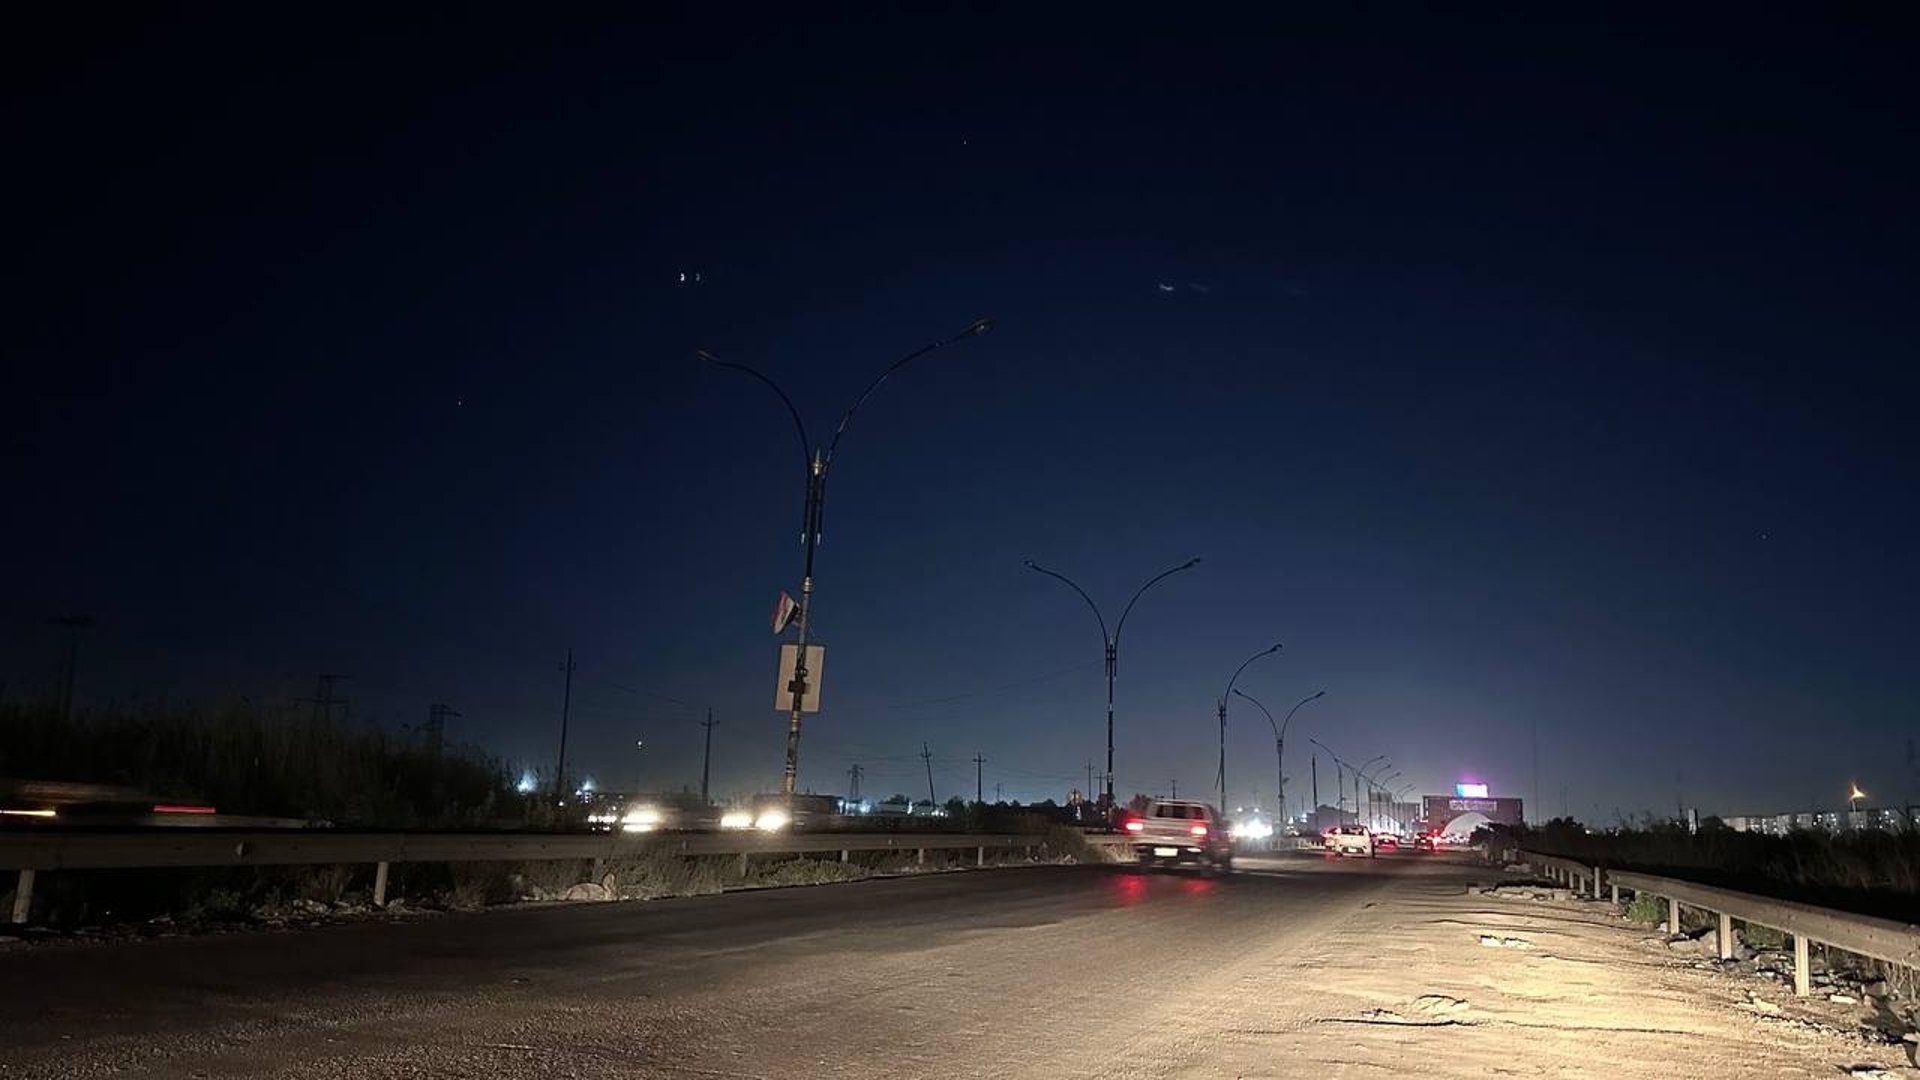 طريق سلمان باك بغداد يغرق في الظلام.. قلق مزمن من دهس المارة وصدم السيارات